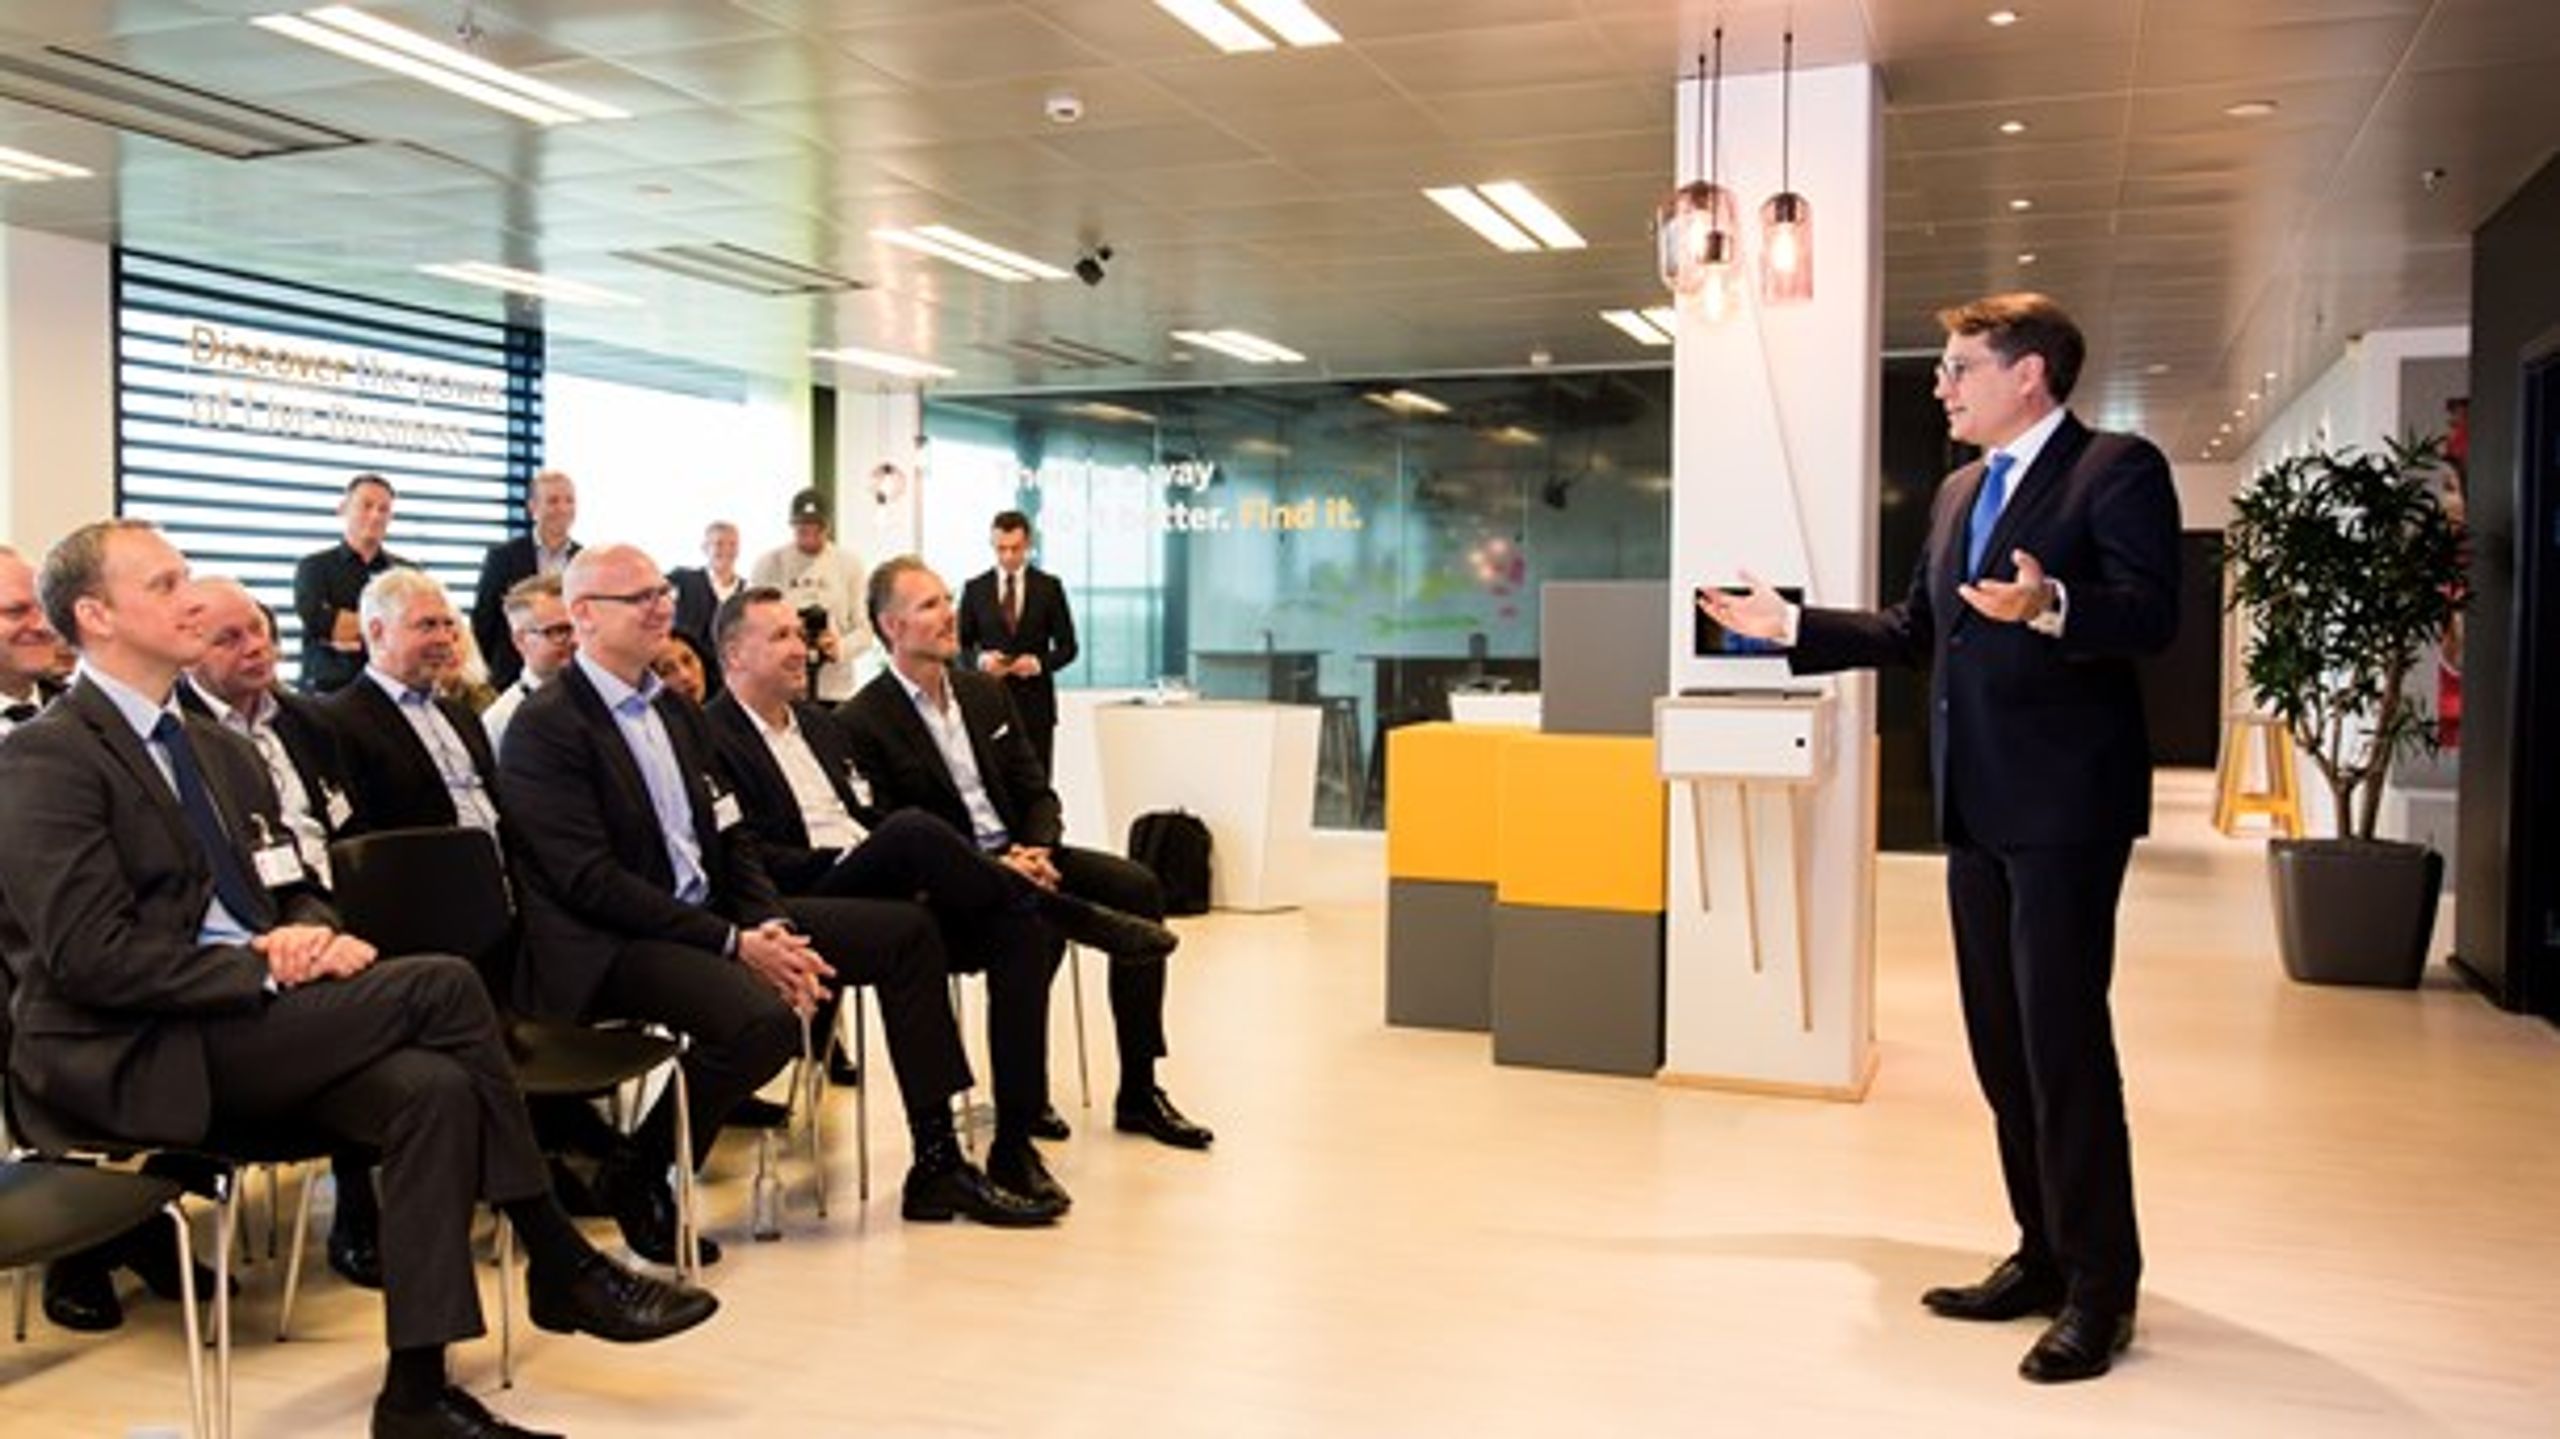 Erhvervsminister Brian Mikkelsen (K) ønsker SAP tillykke med deres nyåbnede Experience Center. Længst til højre på forreste række sidder Jesper Schleimann.